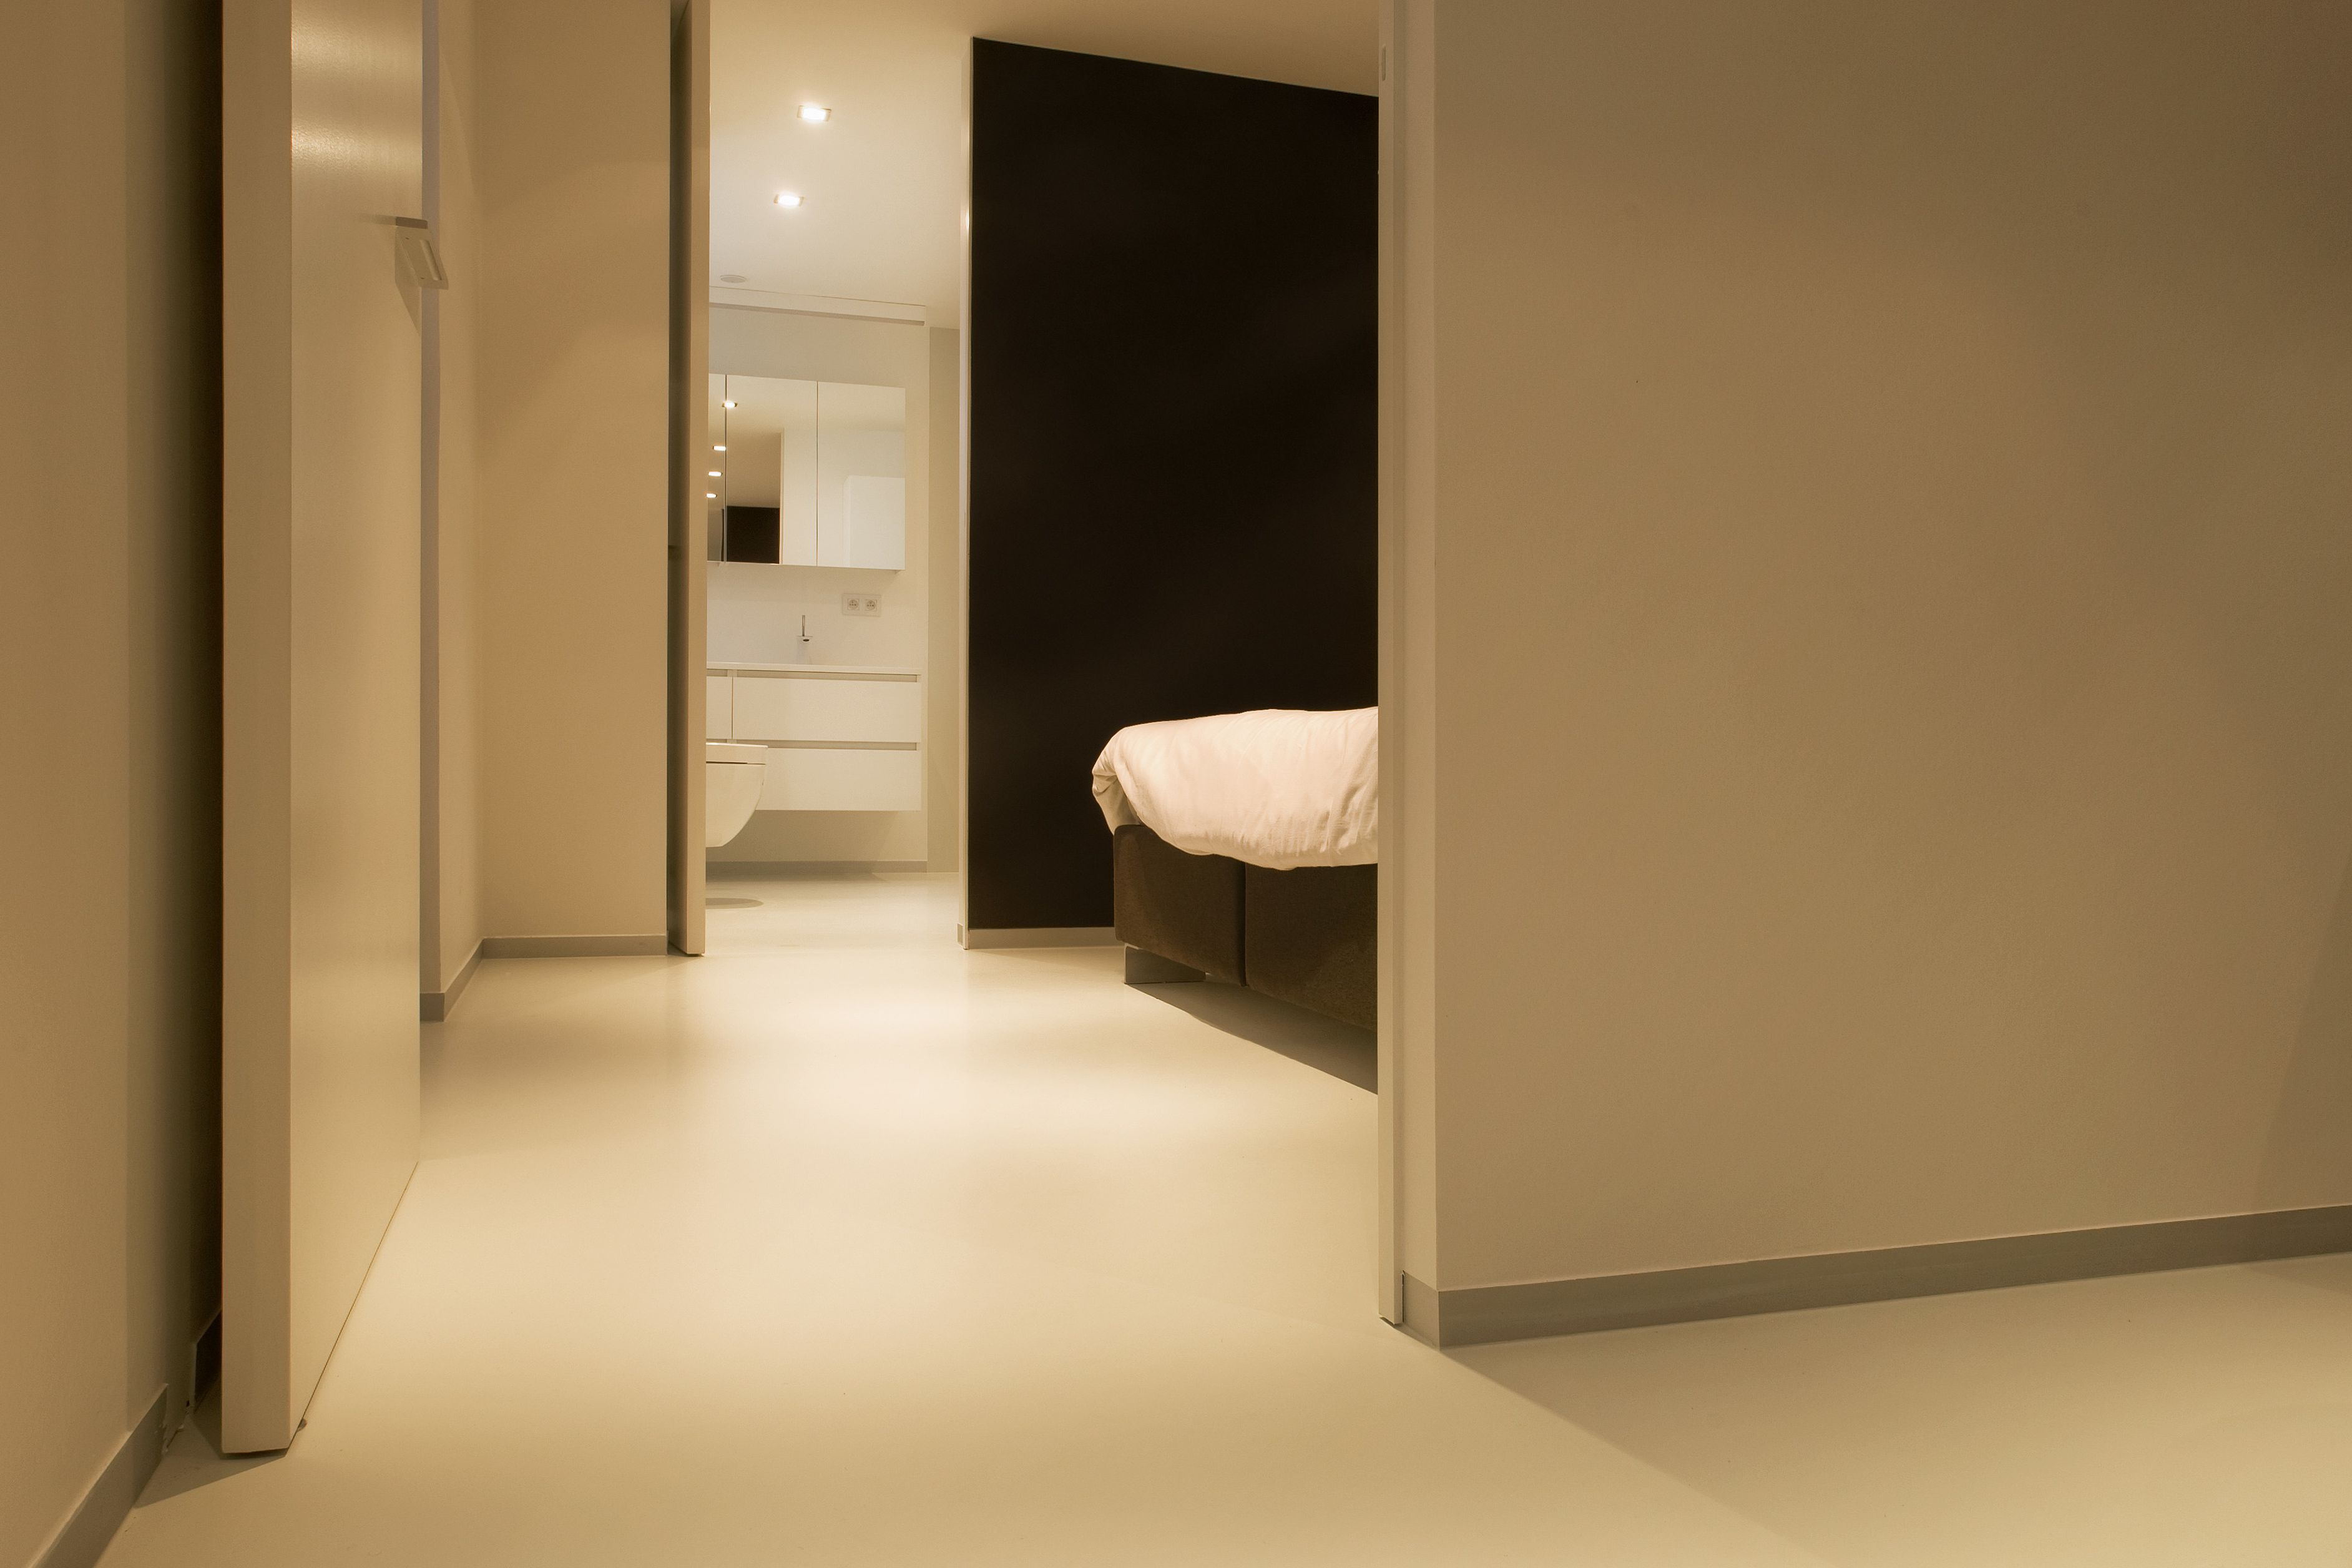 Sika ComfortFloor® beige floor in bedroom and bathroom in modern home